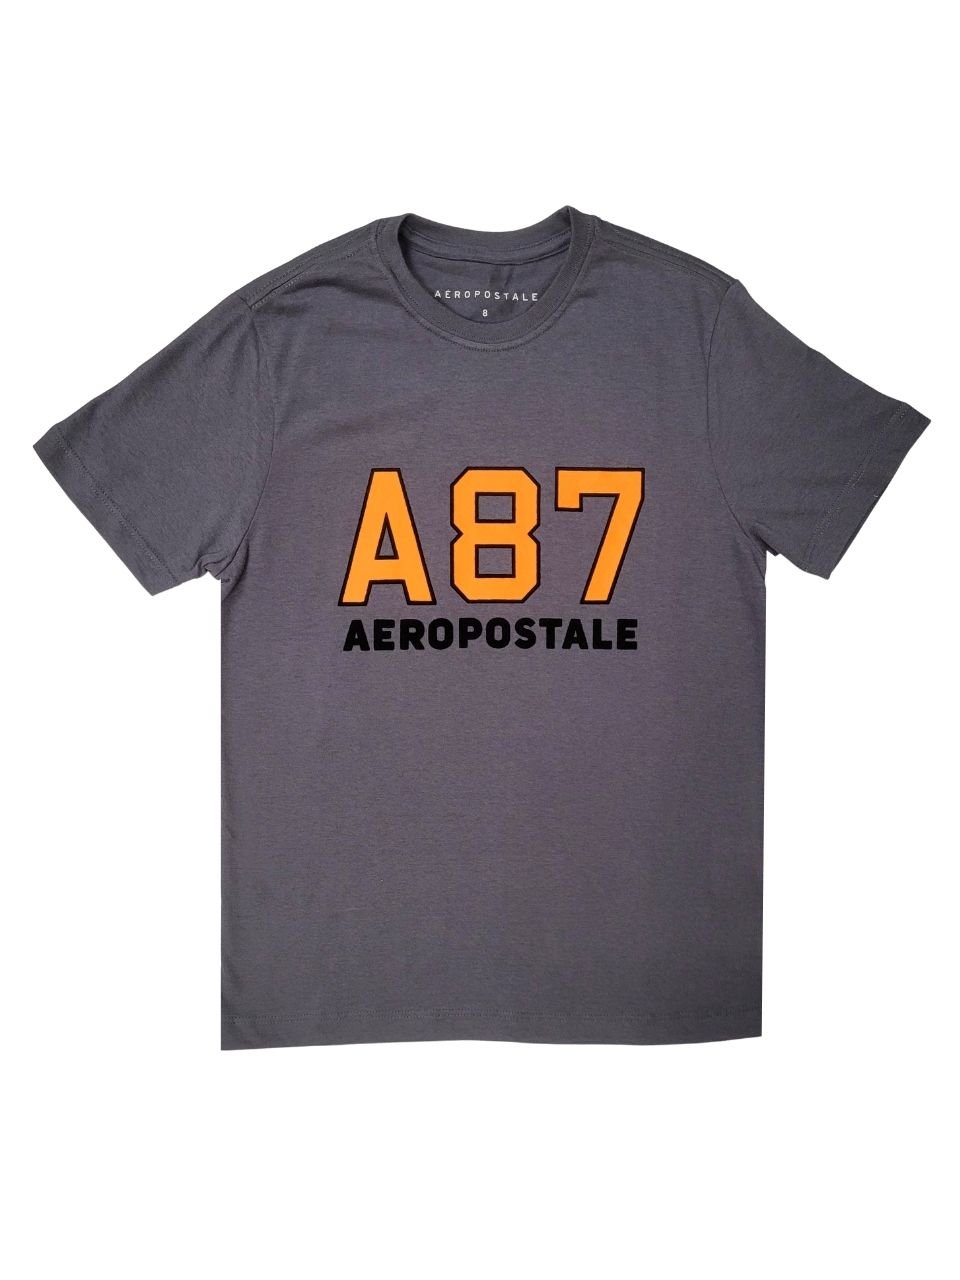 Camiseta Aeropostale A87 Verde - Compre Agora